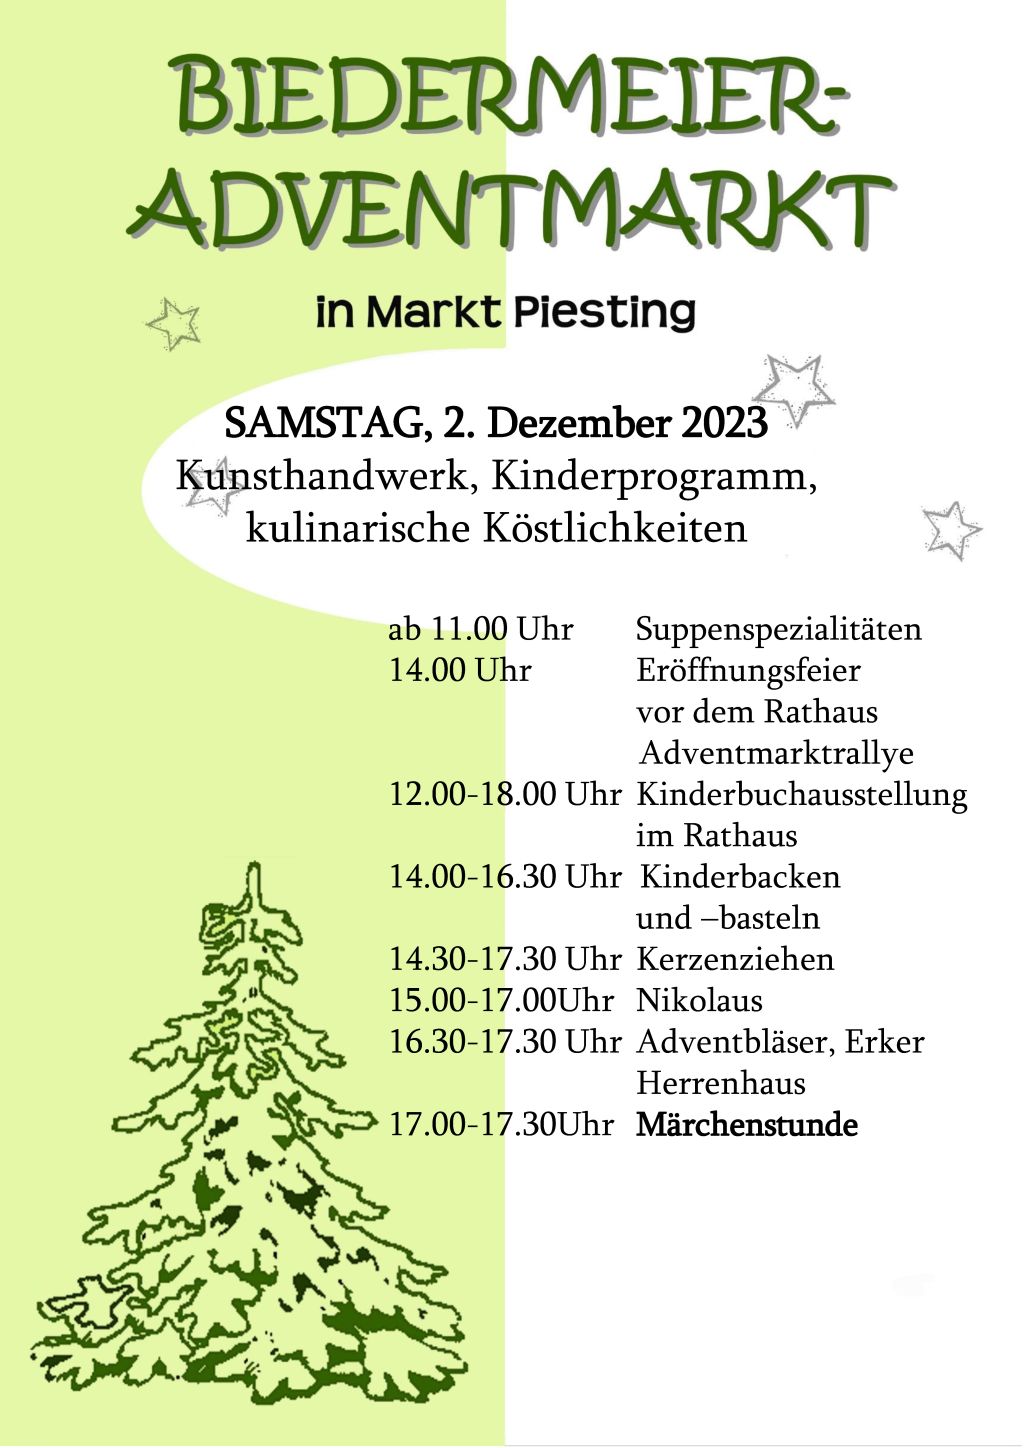 Biedermeier-Adventmarkt